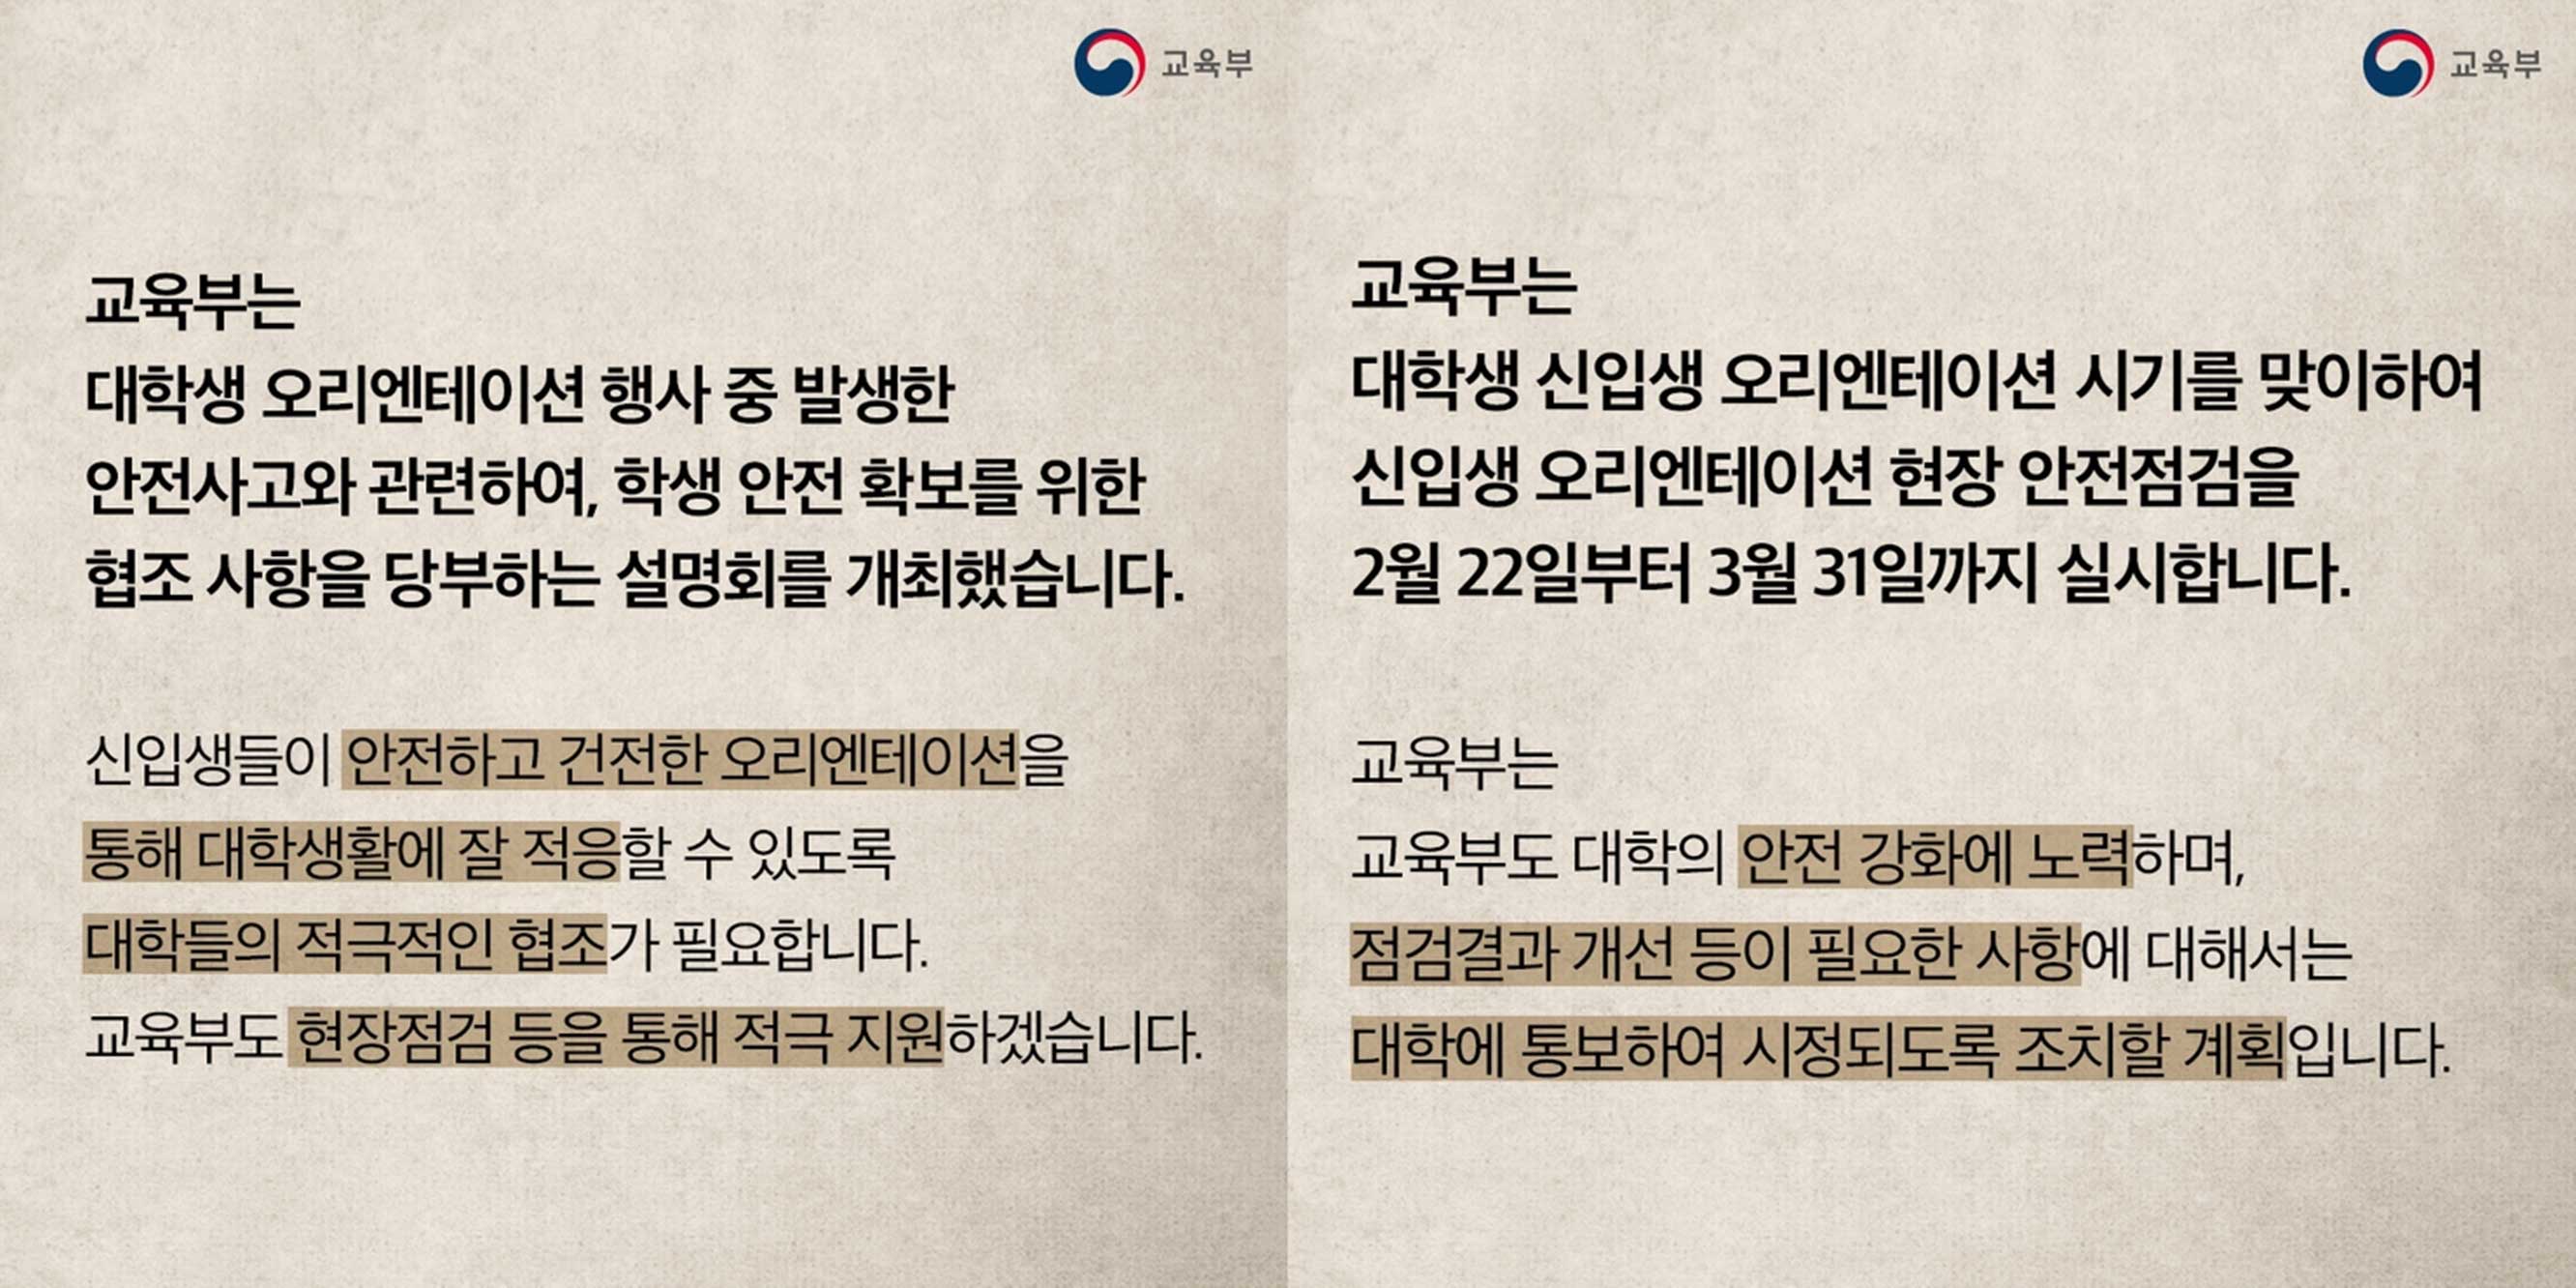 출처: 대한민국 교육부 공식 블로그